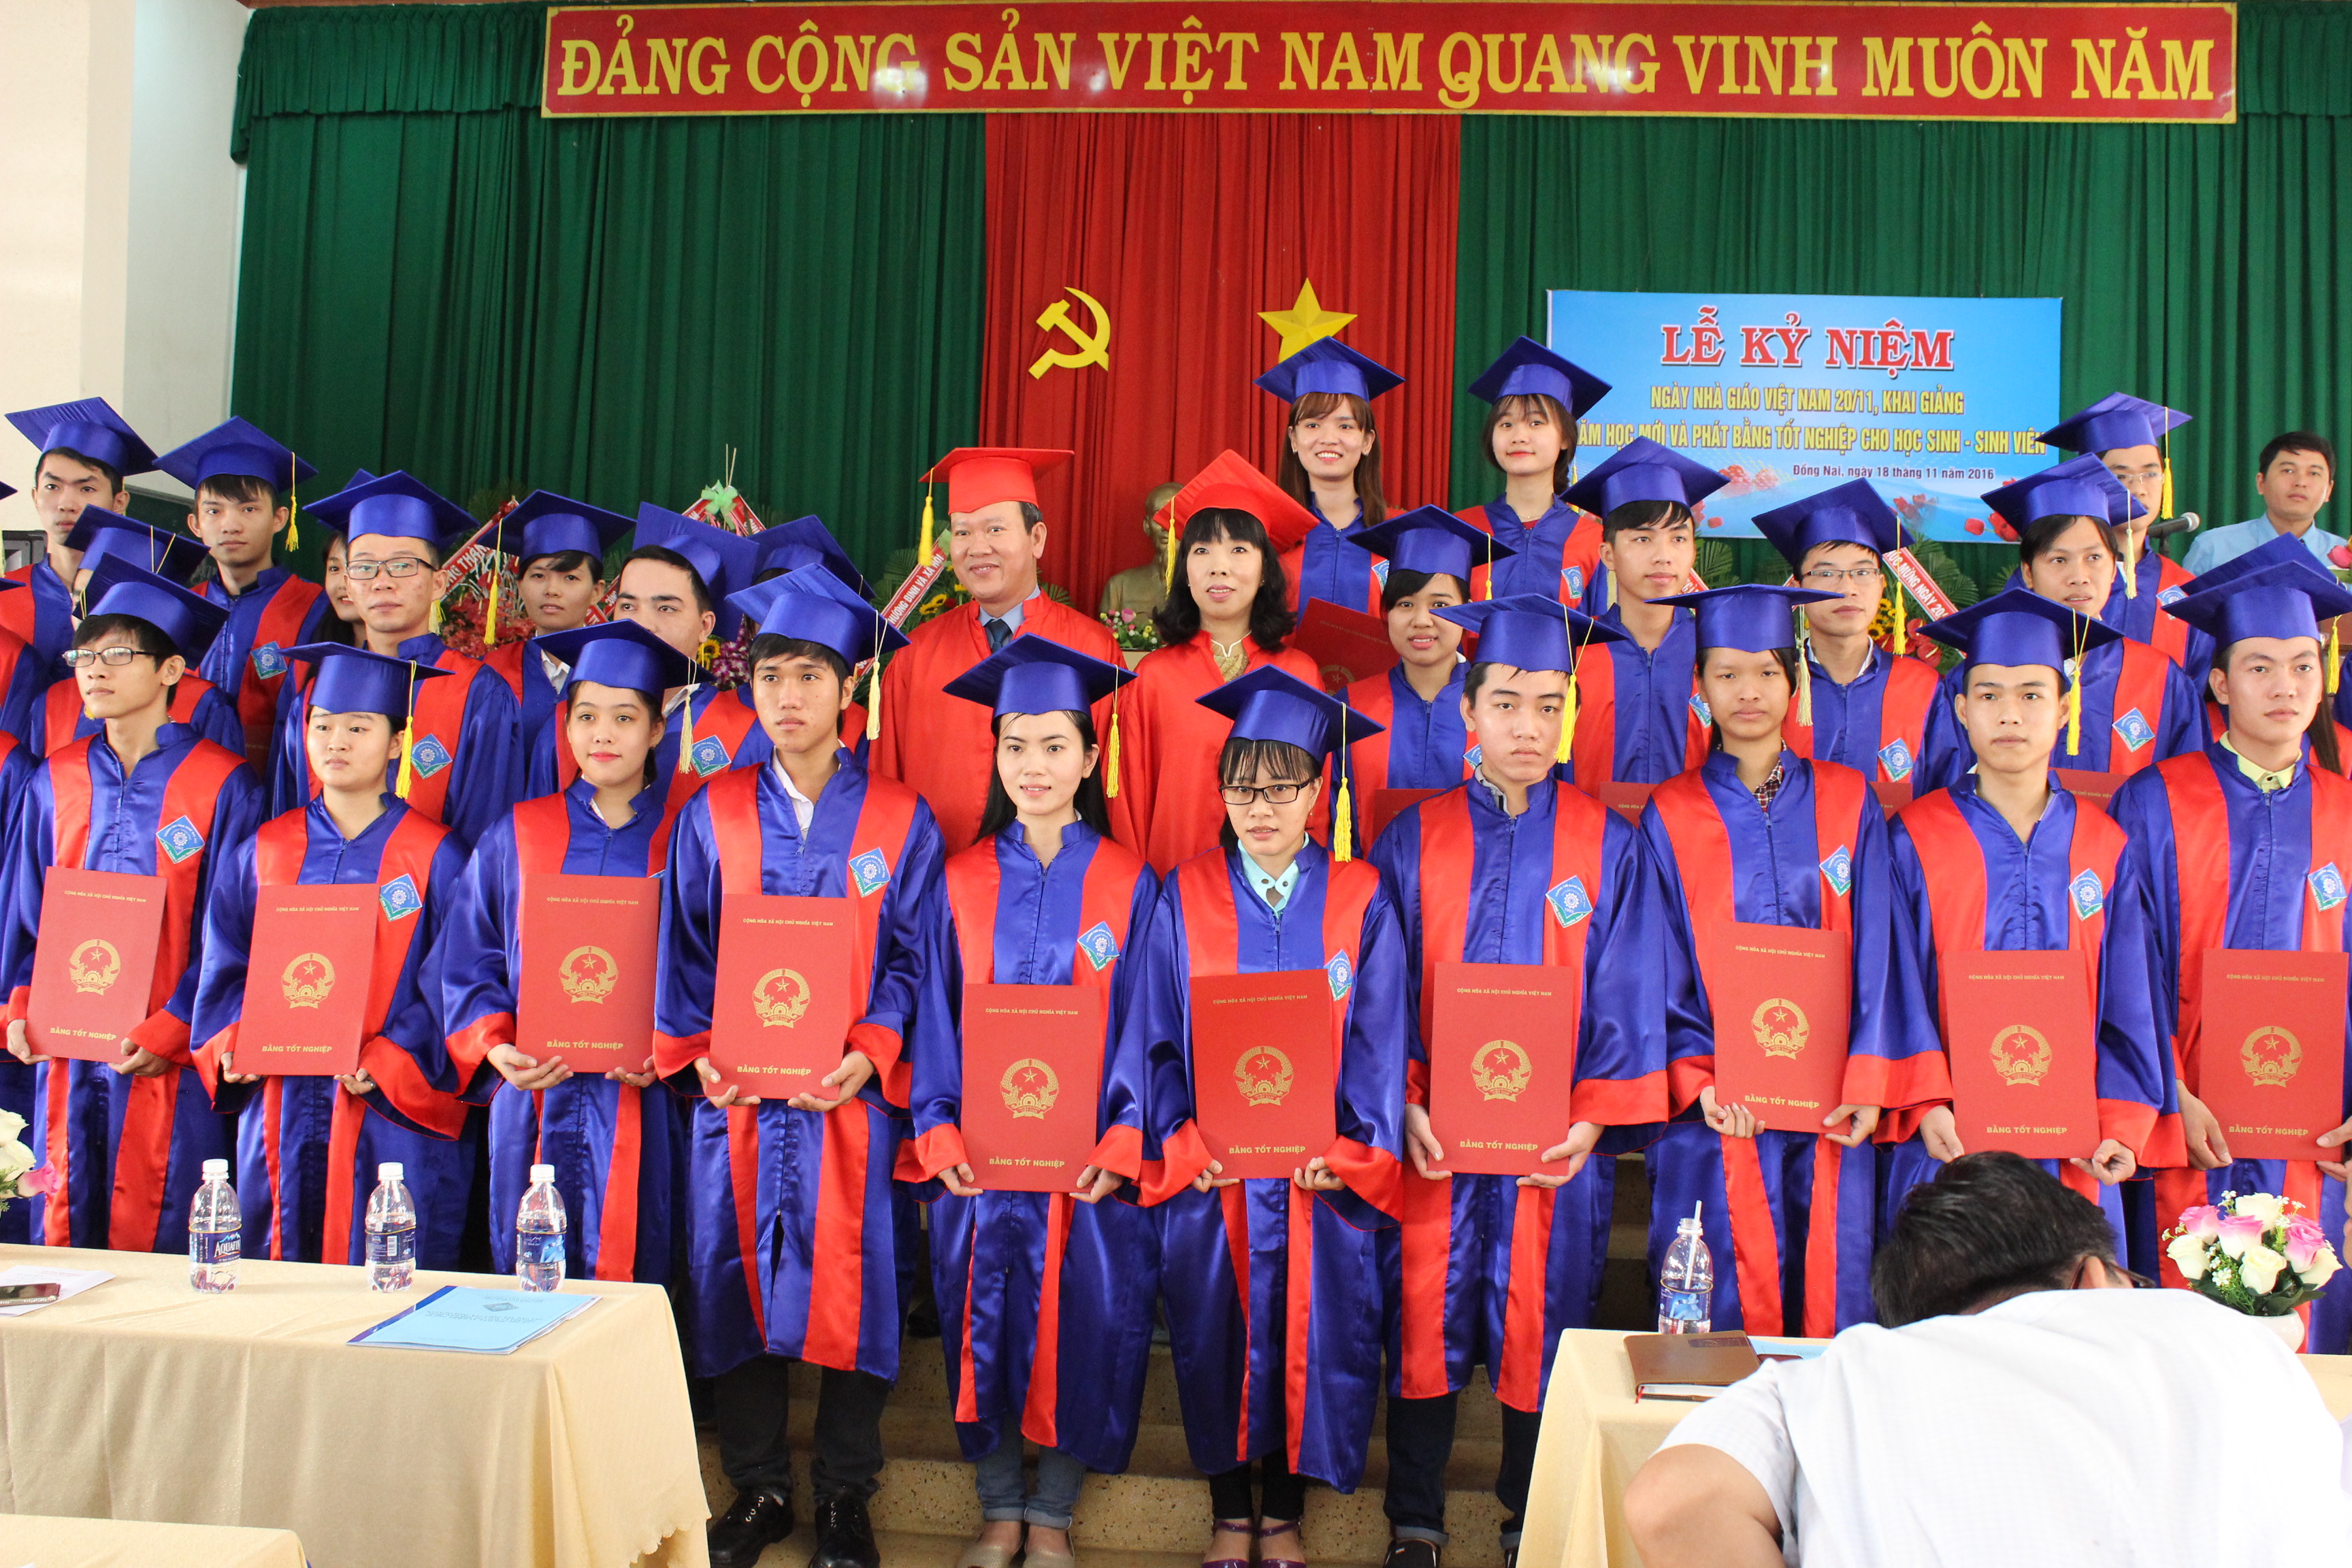 Lễ phát bằng tốt nghiệp cho sinh viên cao đẳng khóa 2013-2016